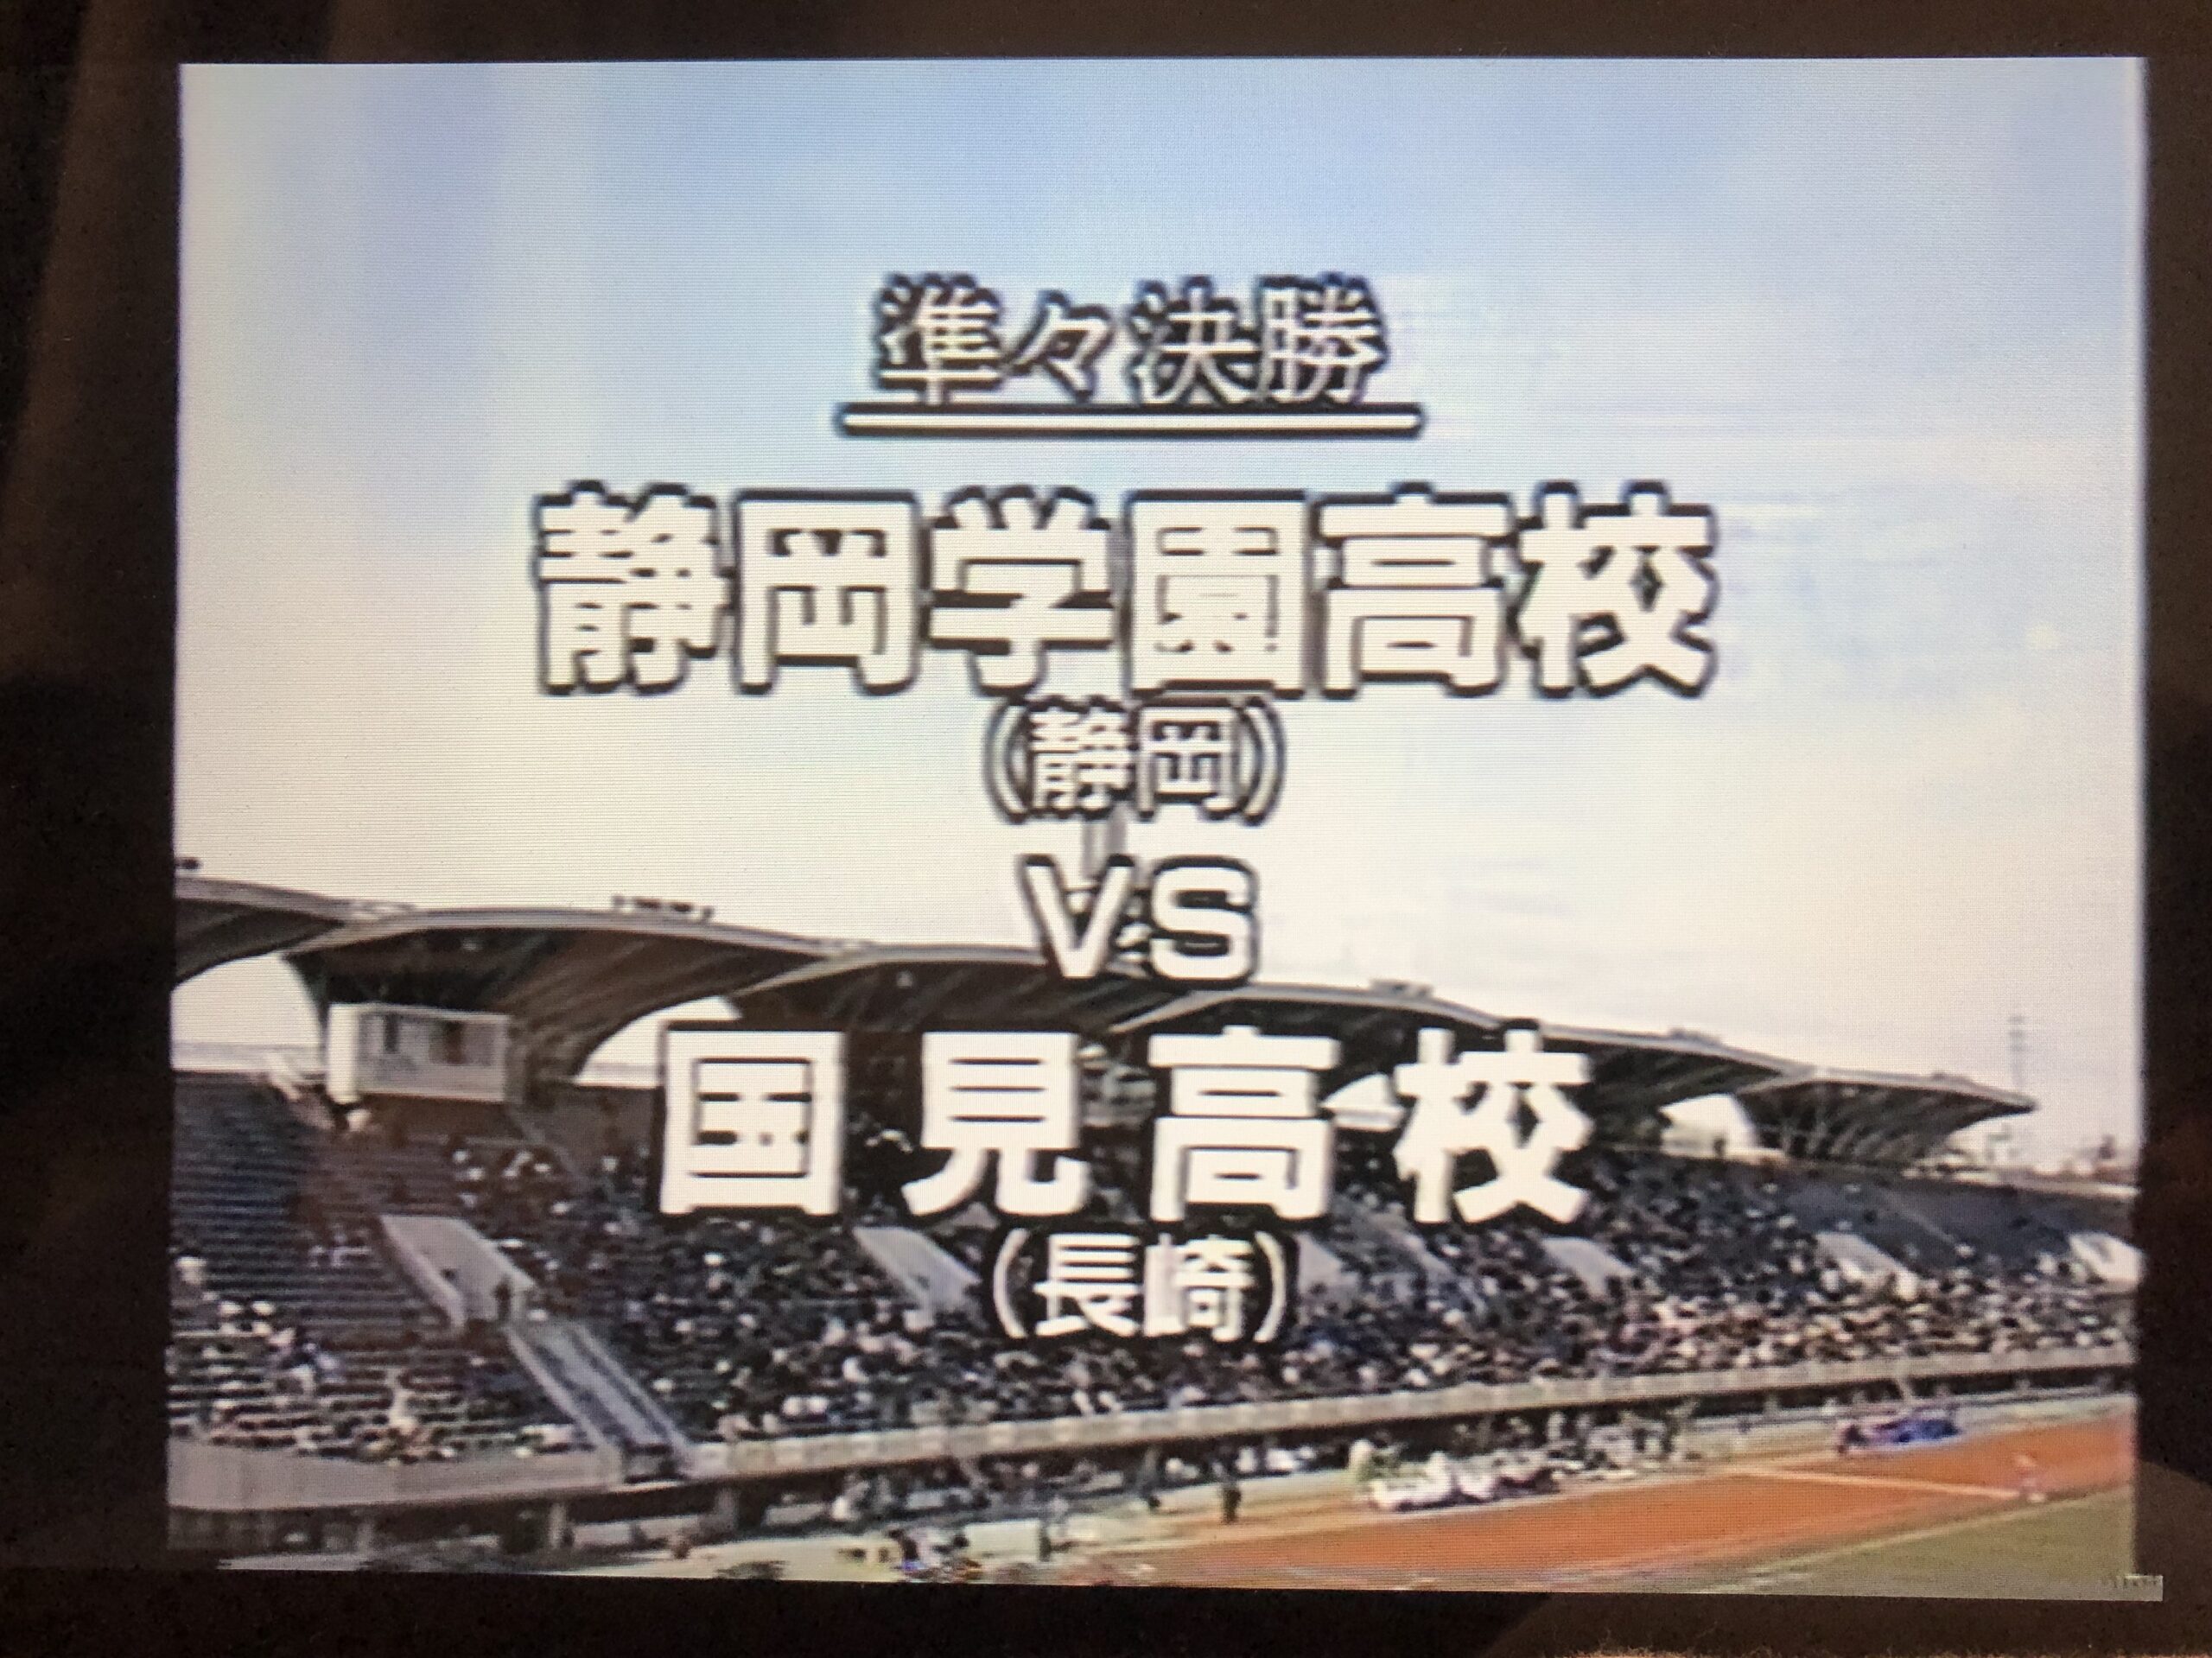 高校サッカー静岡学園のセットアップです。